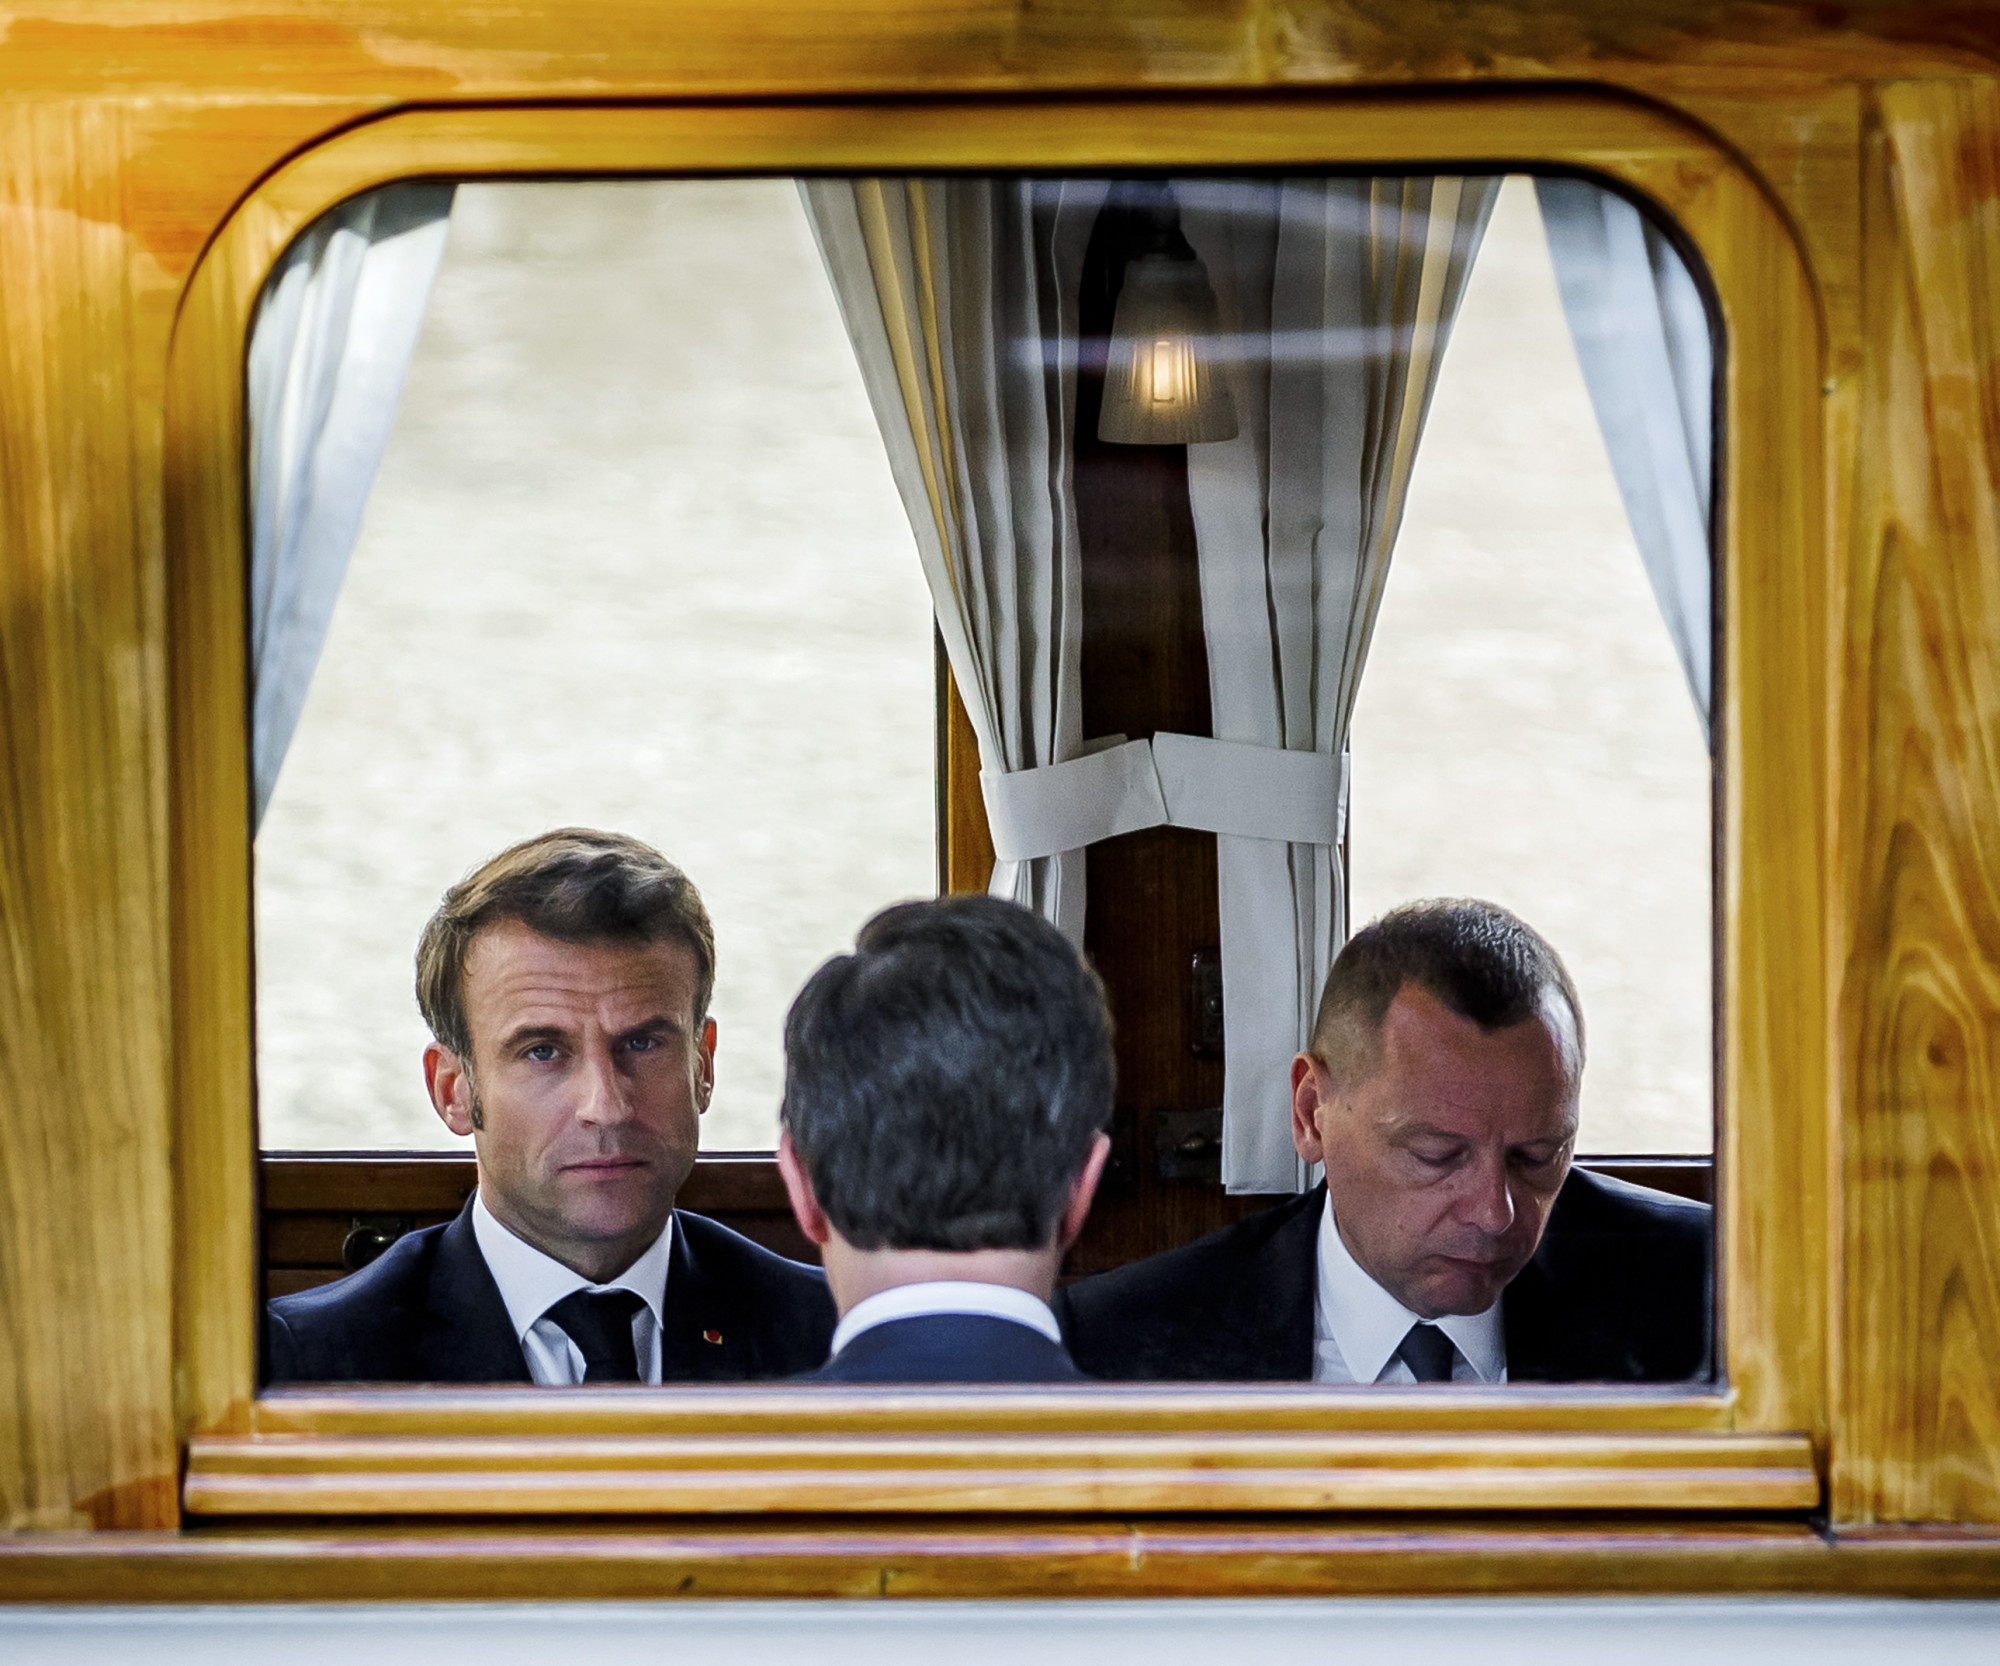 Macron megüzente az amerikaiaknak, hogy a szövetségesek nem egyenlők a vazallusokkal